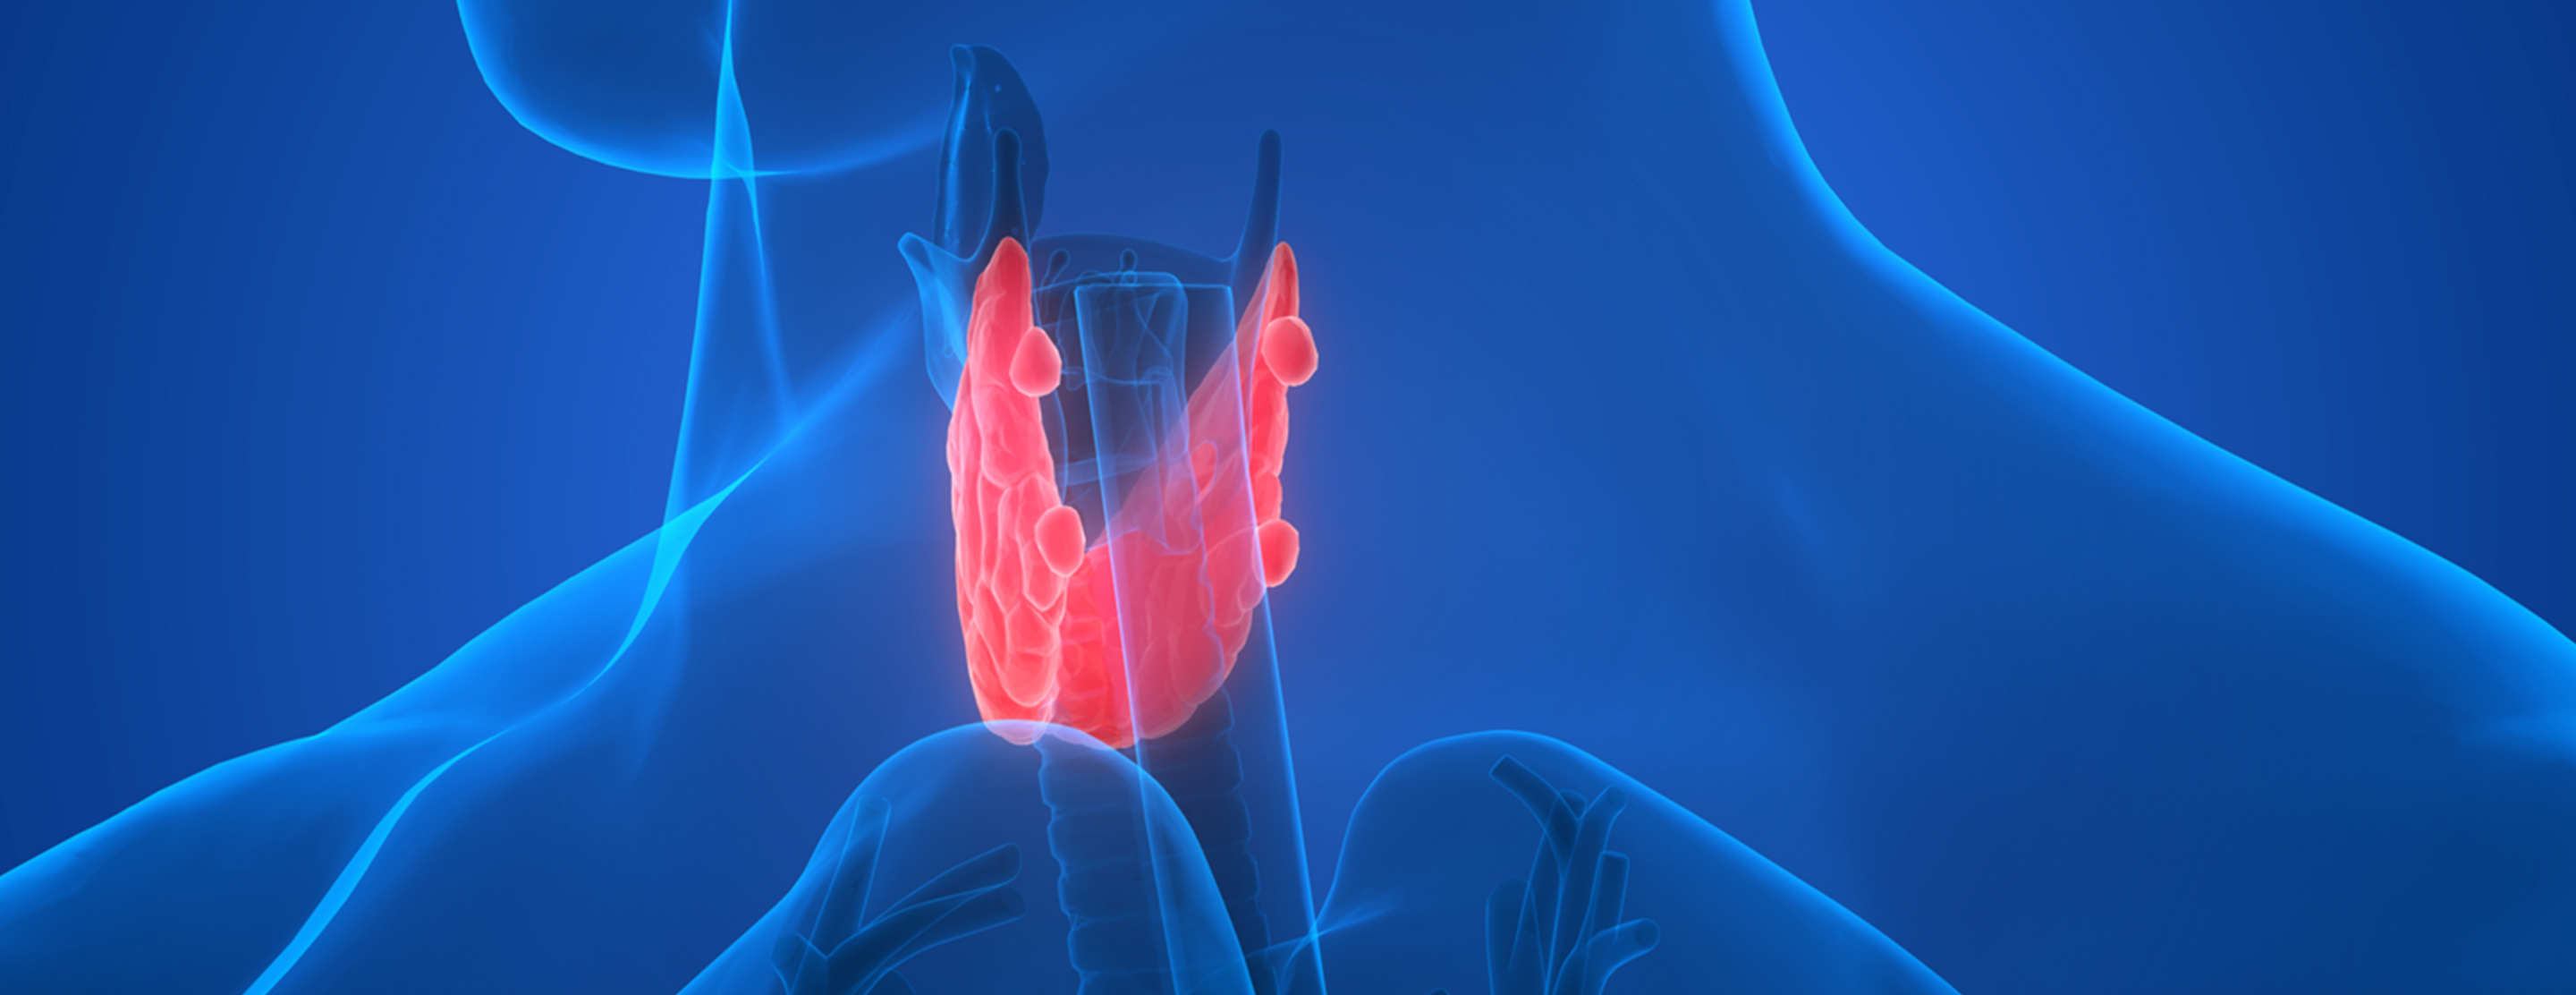 Эндокринология 2023. Эндокринология щитовидная железа. Щитовидная железа на синем фоне. Щитовидка реклама.